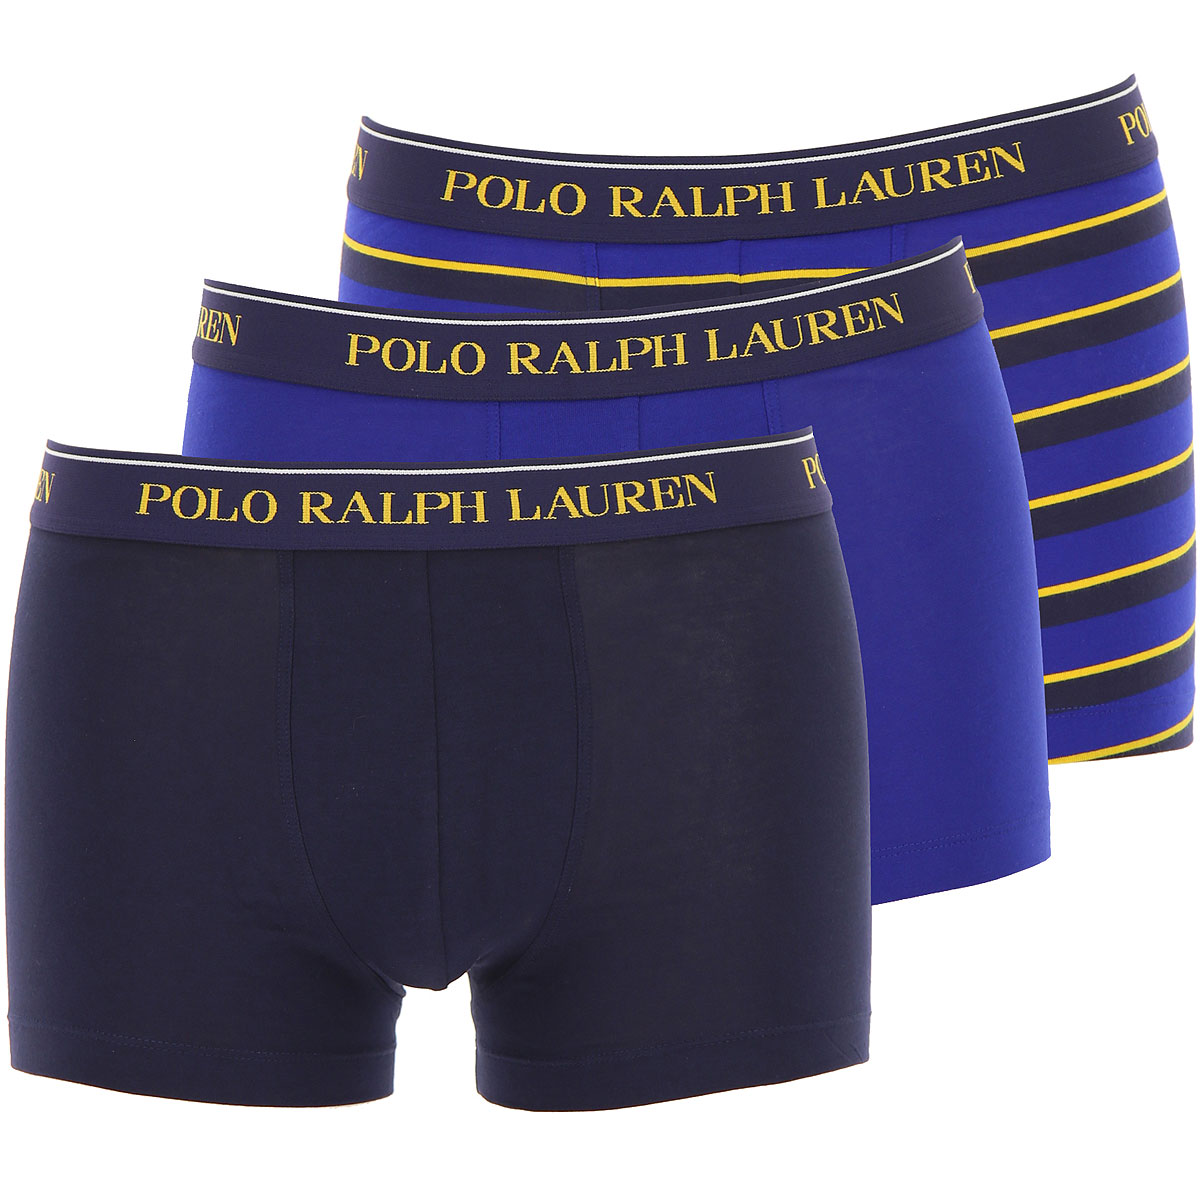 Ralph Lauren Boxer Shorts für Herren, Unterhose, Short, Boxer Günstig im Sale, 3 Pack, Blau, Baumwolle, 2017, L M S